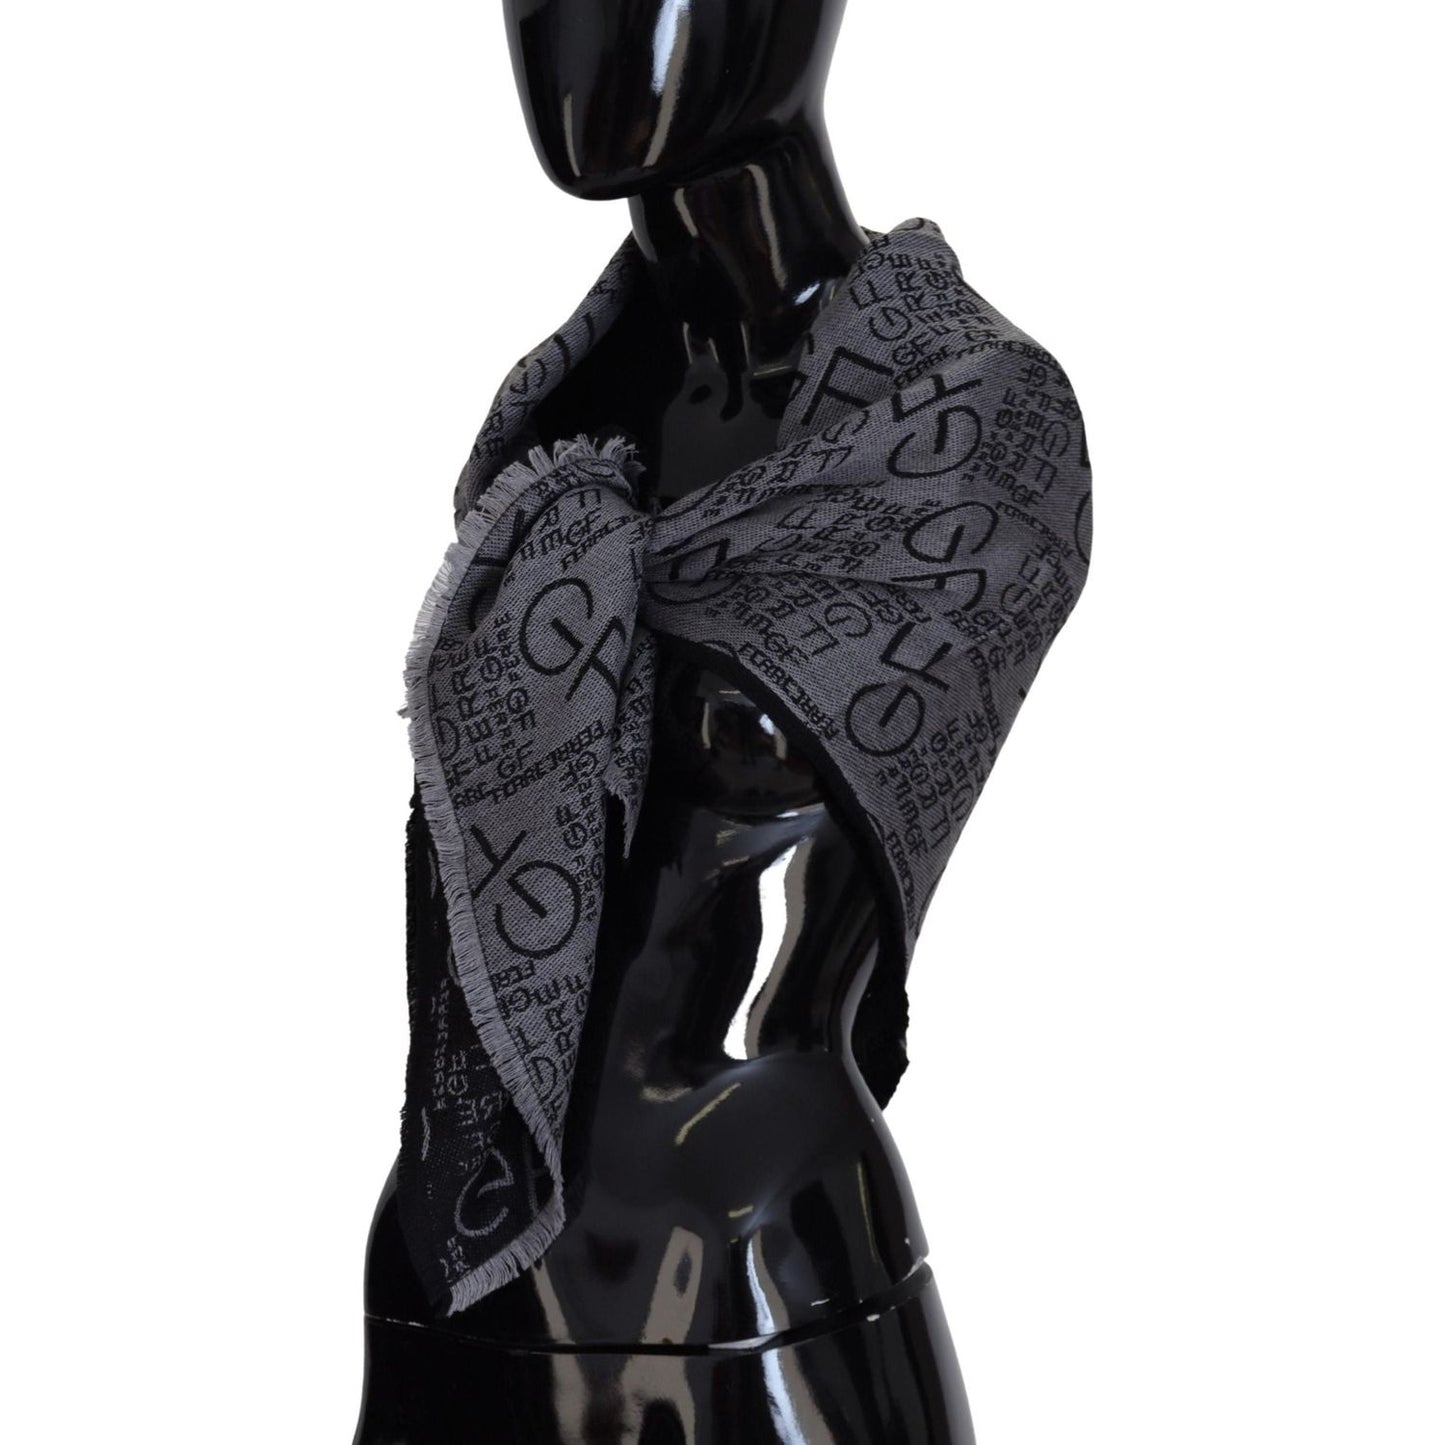 GF Ferre Elegance Unwrapped in a Wool Scarf grey-wool-logo-print-wrap-warmer-shawl-scarf